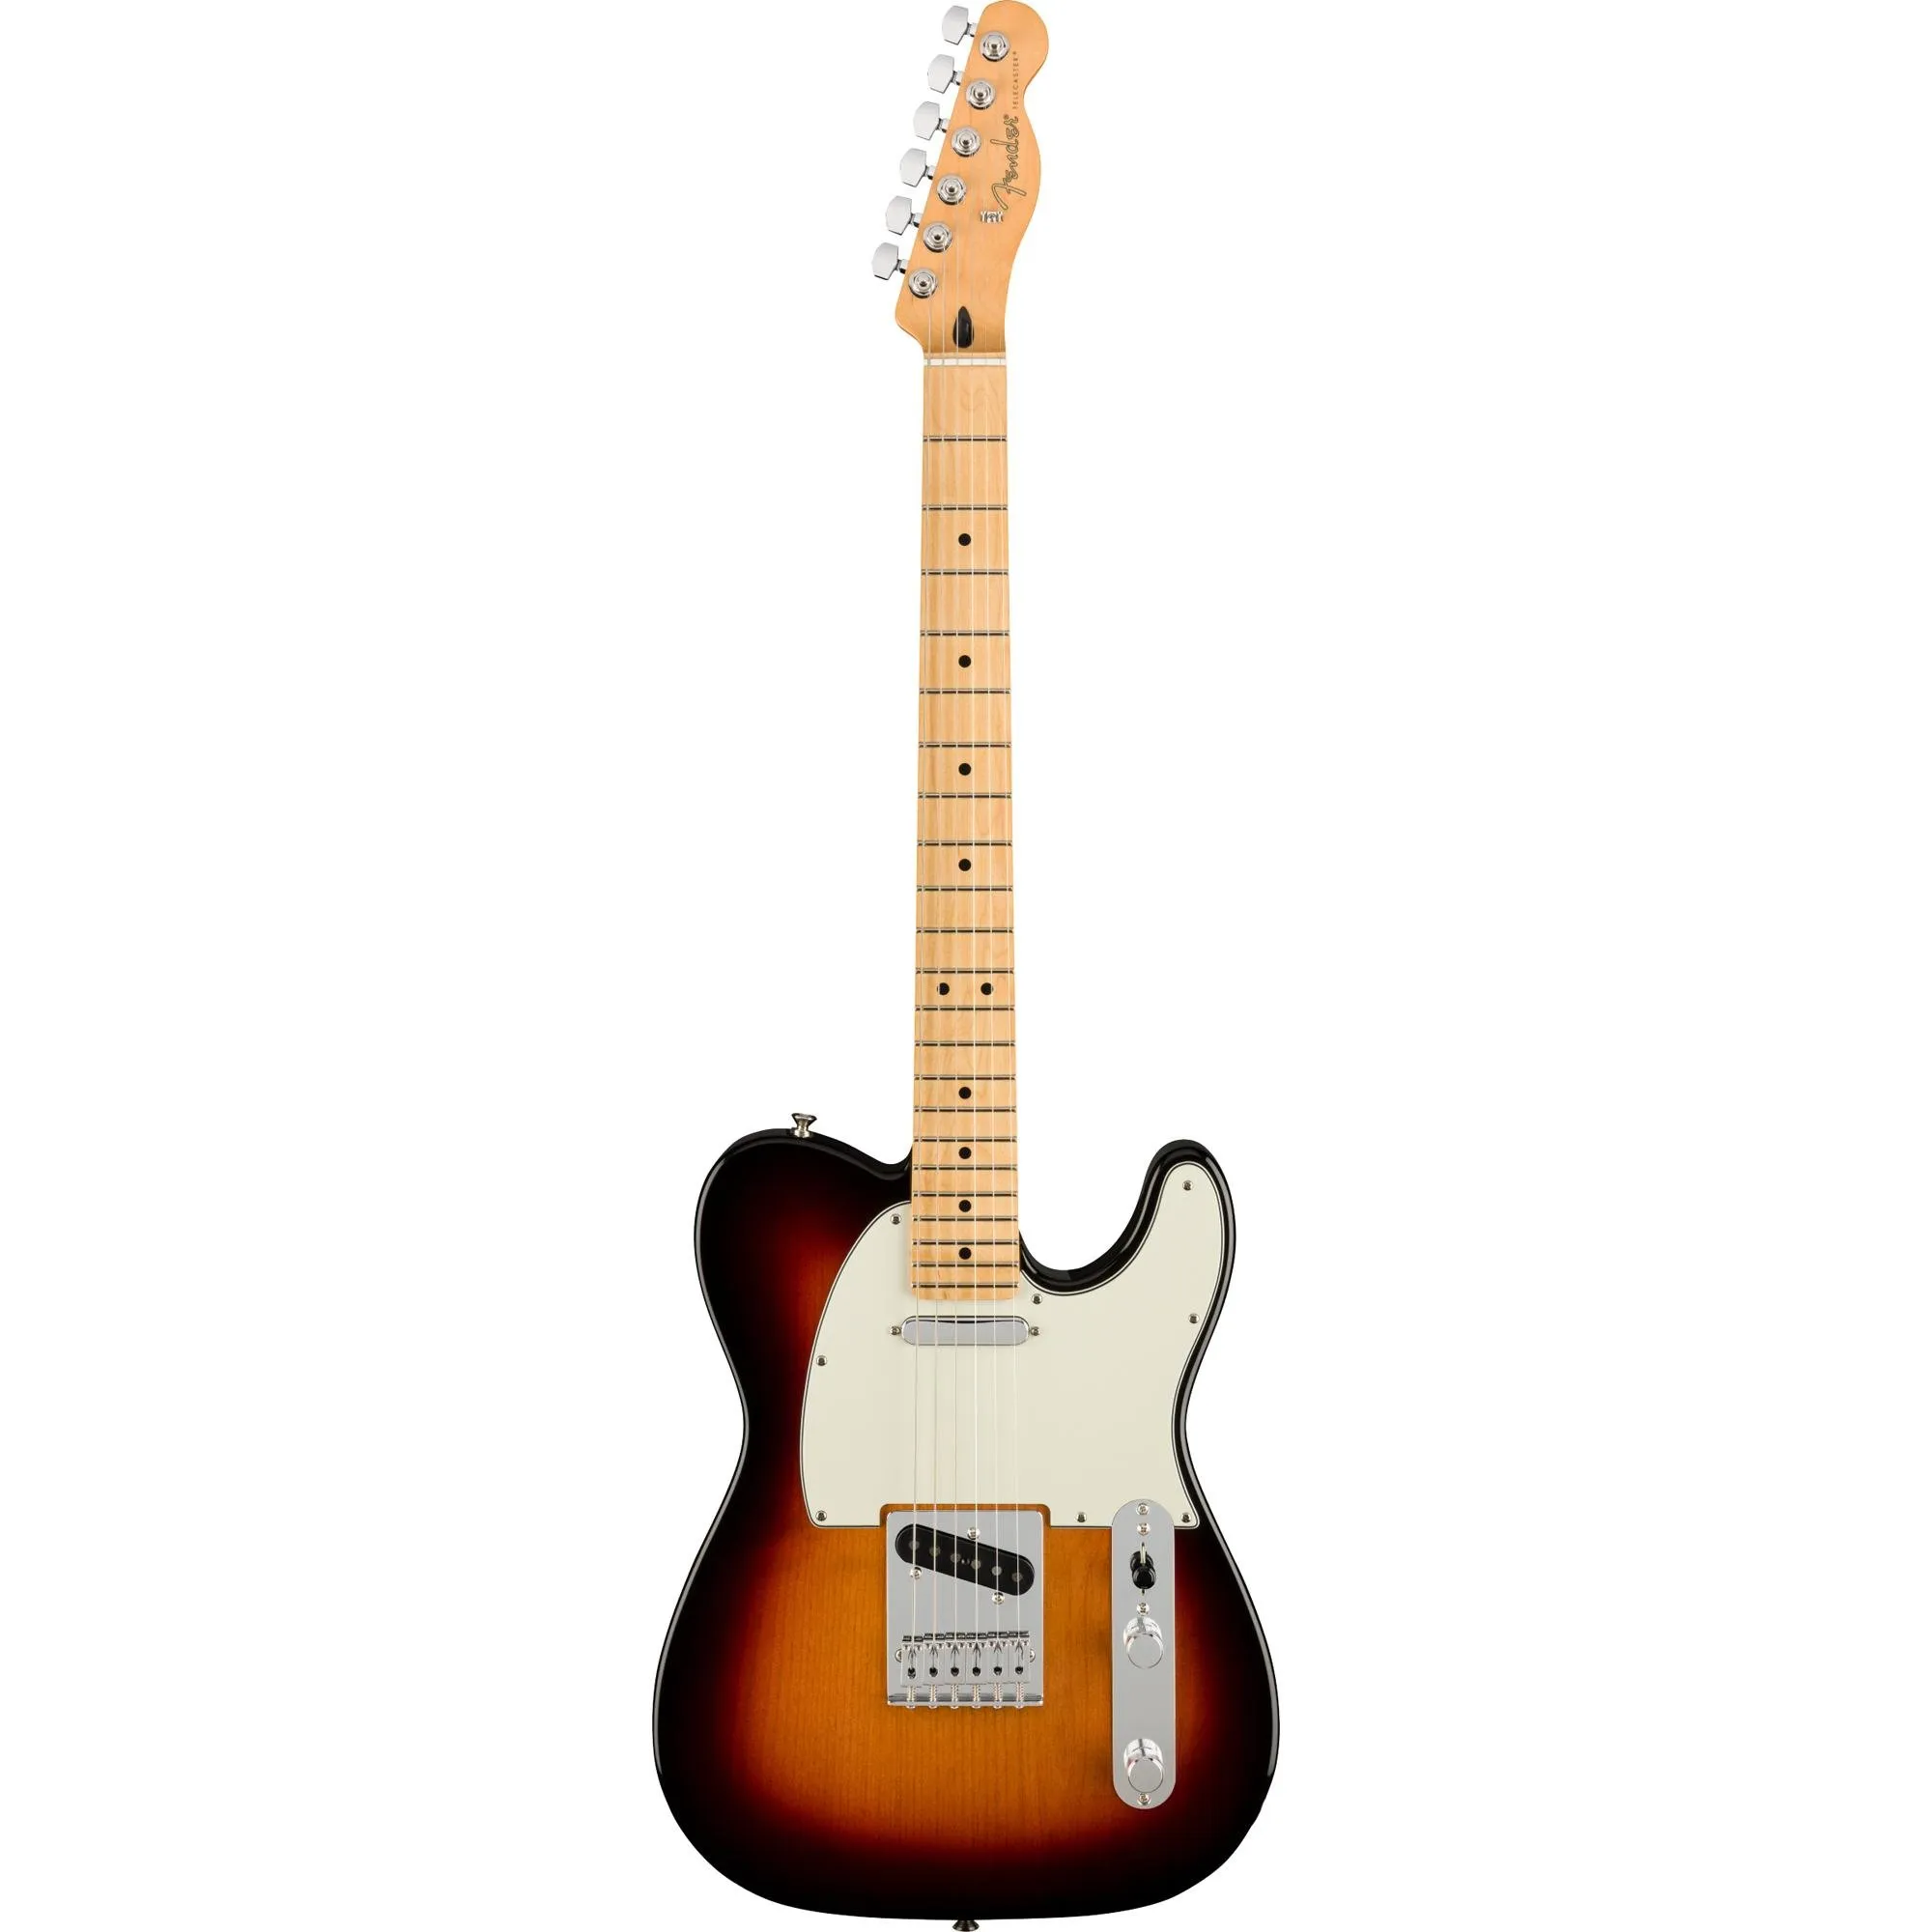 Guitarra Telecaster Fender Player Sunburst por 7.699,99 à vista no boleto/pix ou parcele em até 12x sem juros. Compre na loja Mundomax!